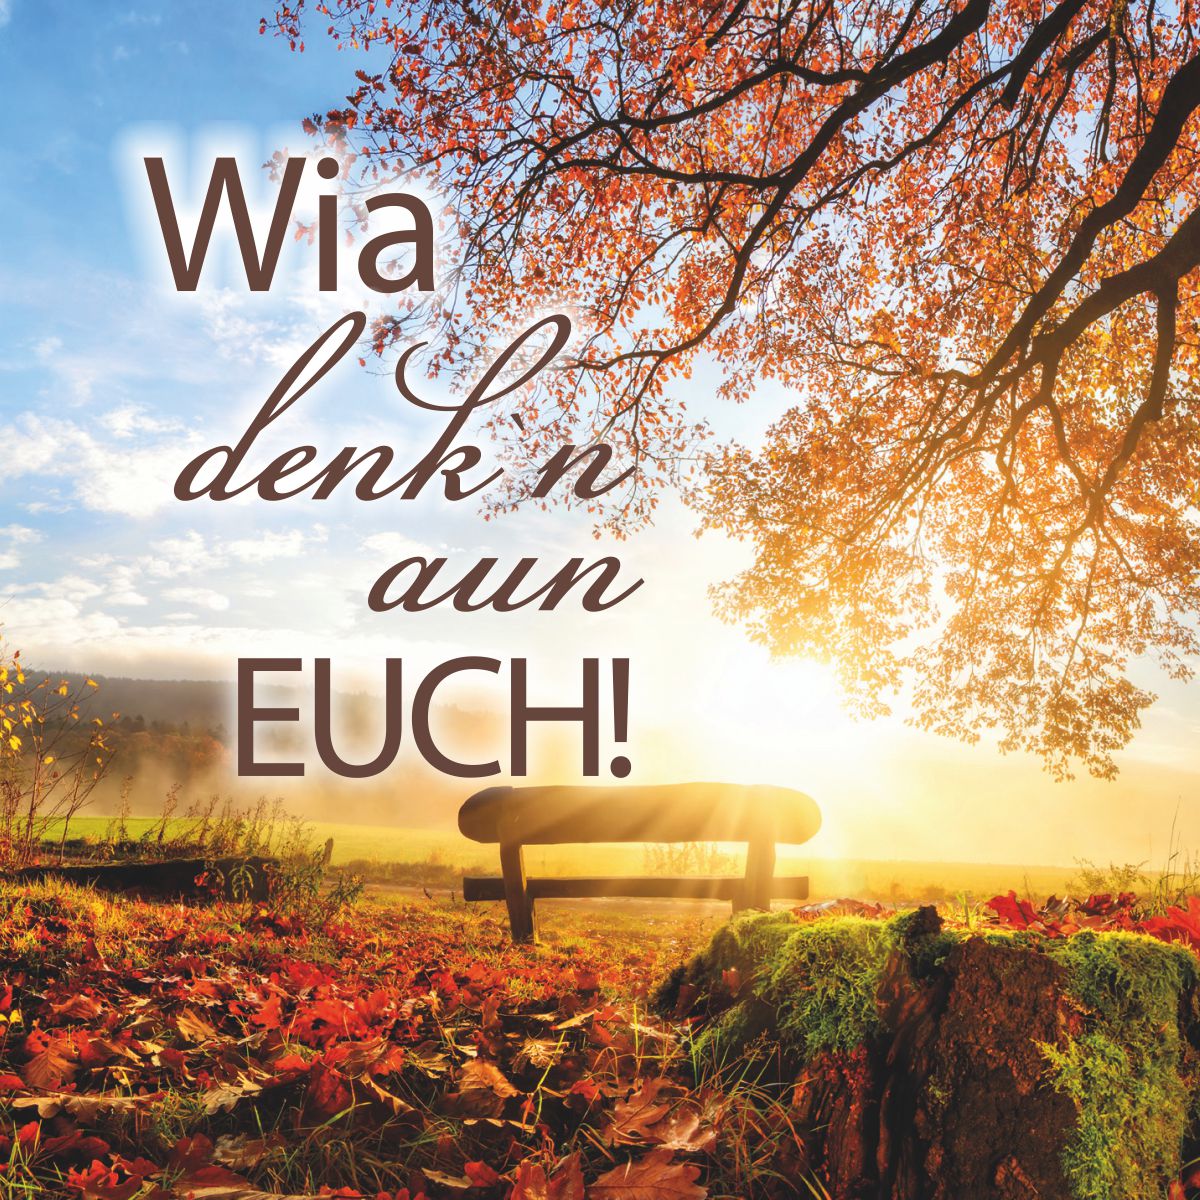 Motiv sonnige Herbstlandschaft mit Text "Wia denk`n aun euch!"